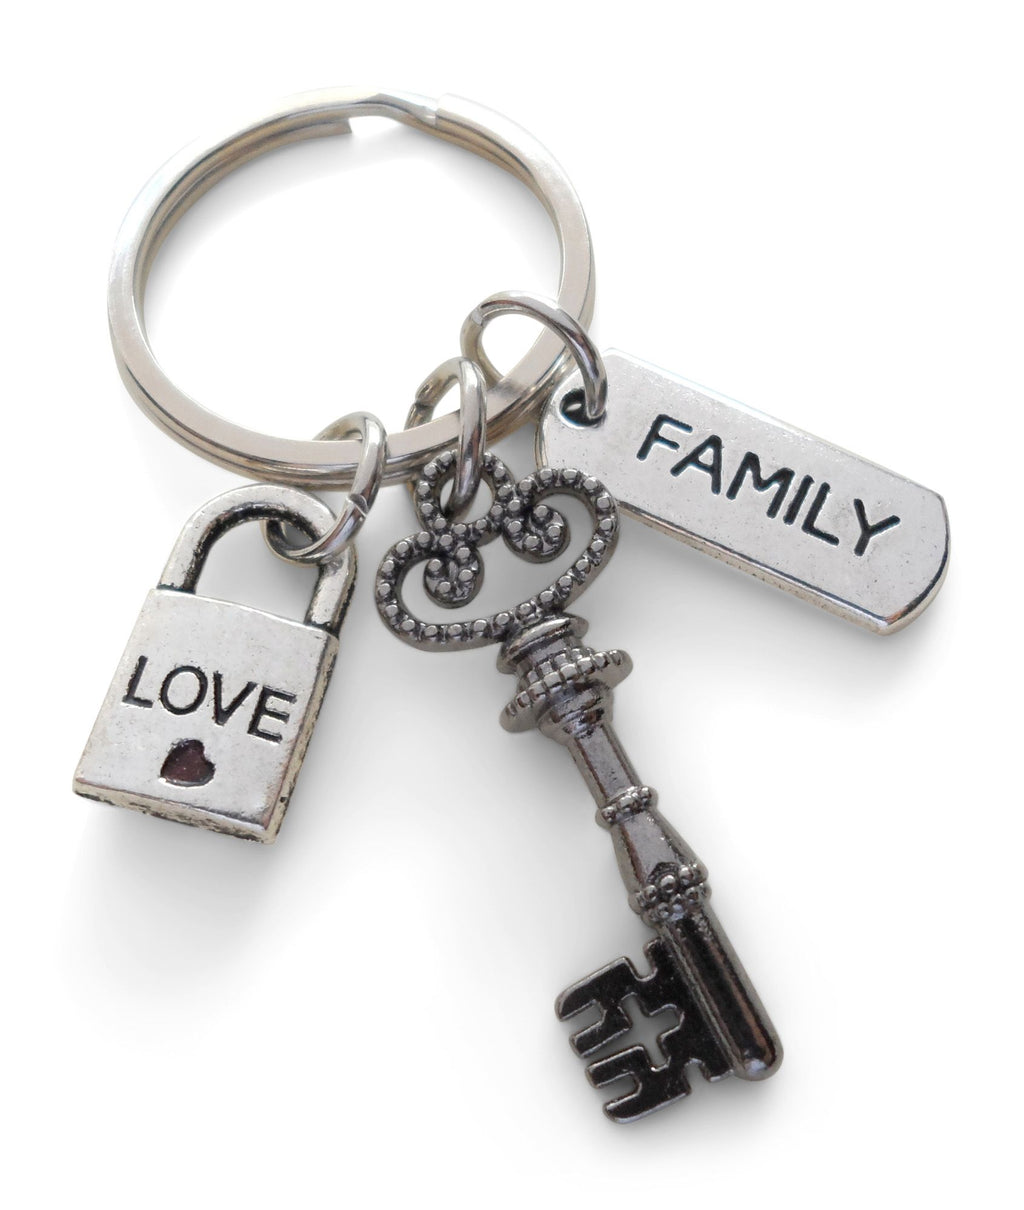 Family Key & Lock Charm Keychain, Family Keychain